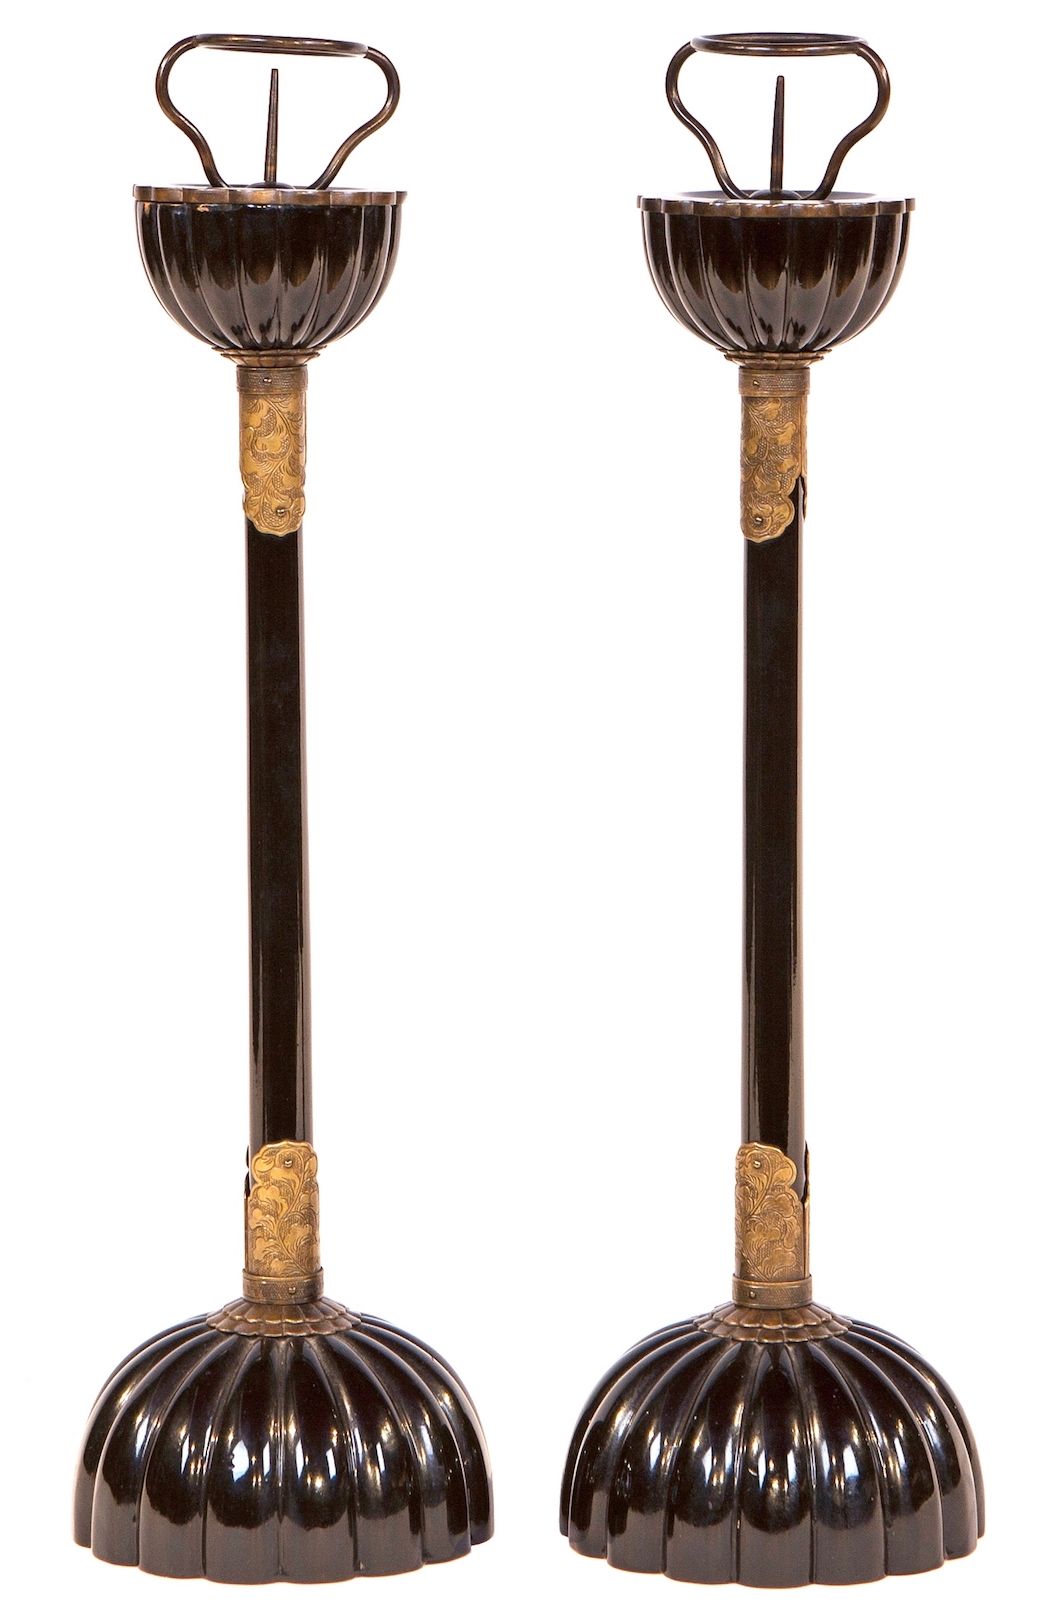 一对日本黑漆青铜烛台明治时期，（1868-1912）。 46厘米350 - 450